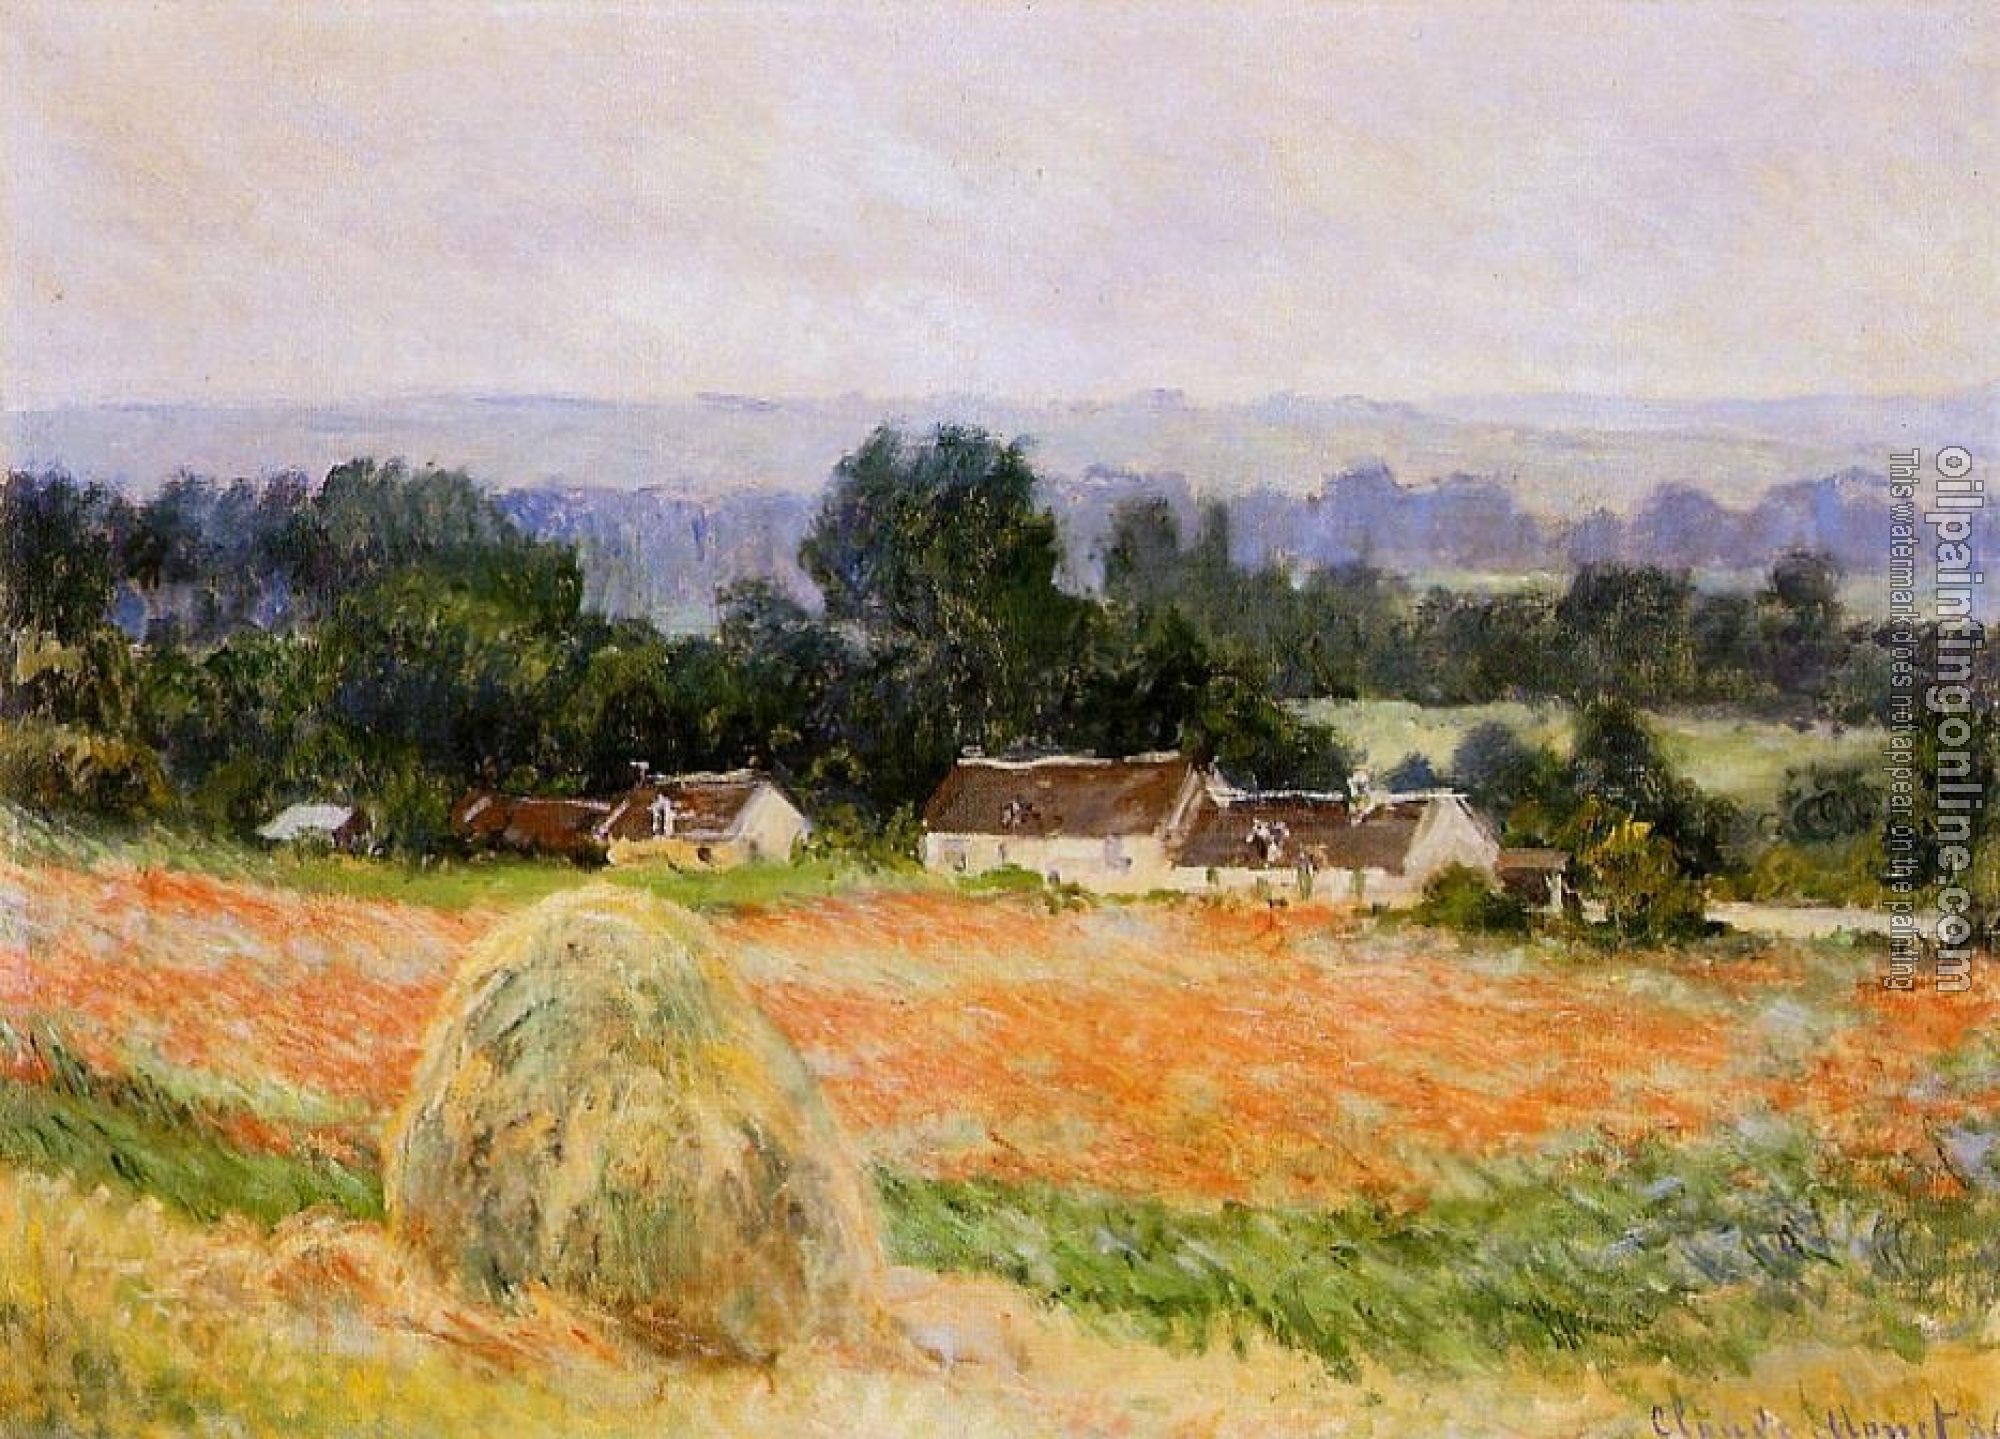 Monet, Claude Oscar - Haystack at Giverny